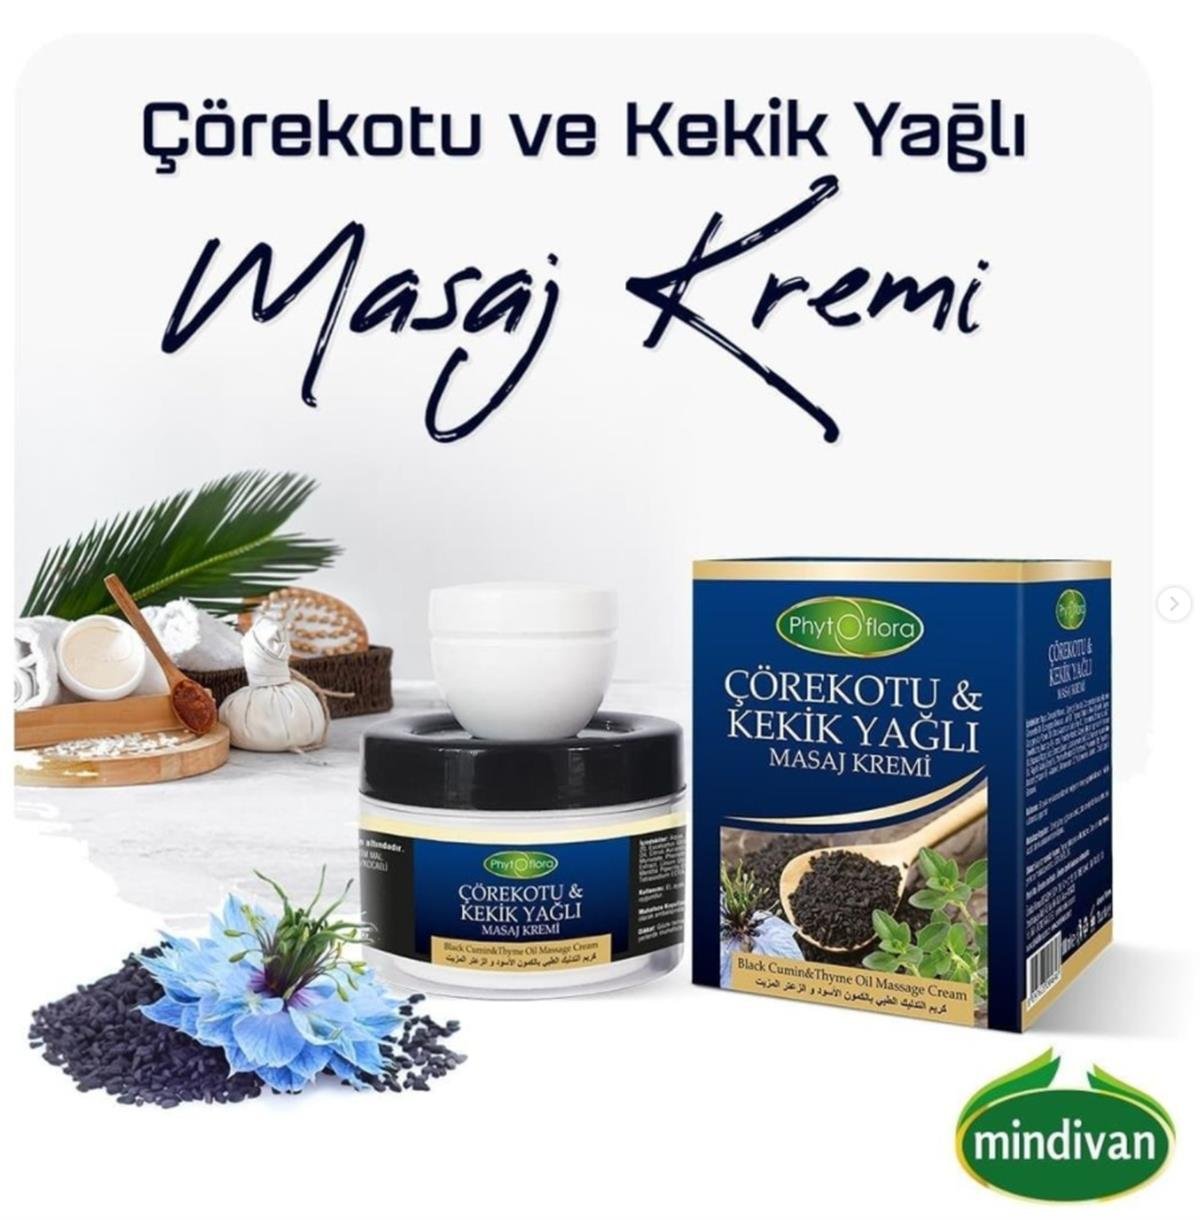 Çörekotu Yağlı & Kekik Yağlı Masaj Kremi | Mindivan.com.tr